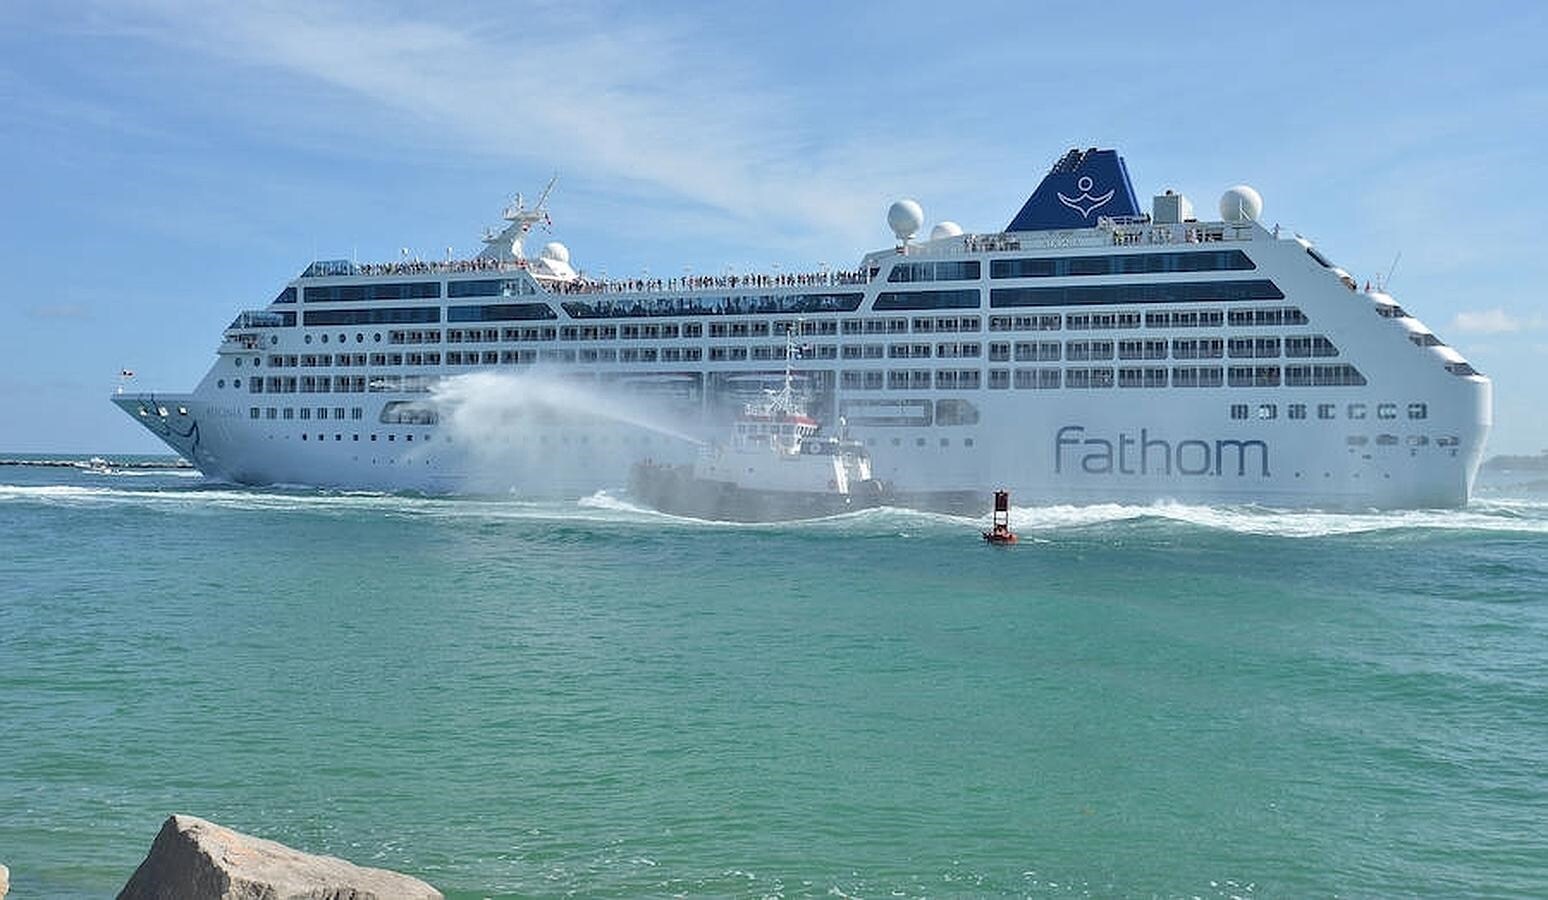 La embarcación de la compañía Fathom, filial de Carnival, el Adonia, deja el puerto en su viaje inaugural de 7 días a Cuba, en el puerto de Miami